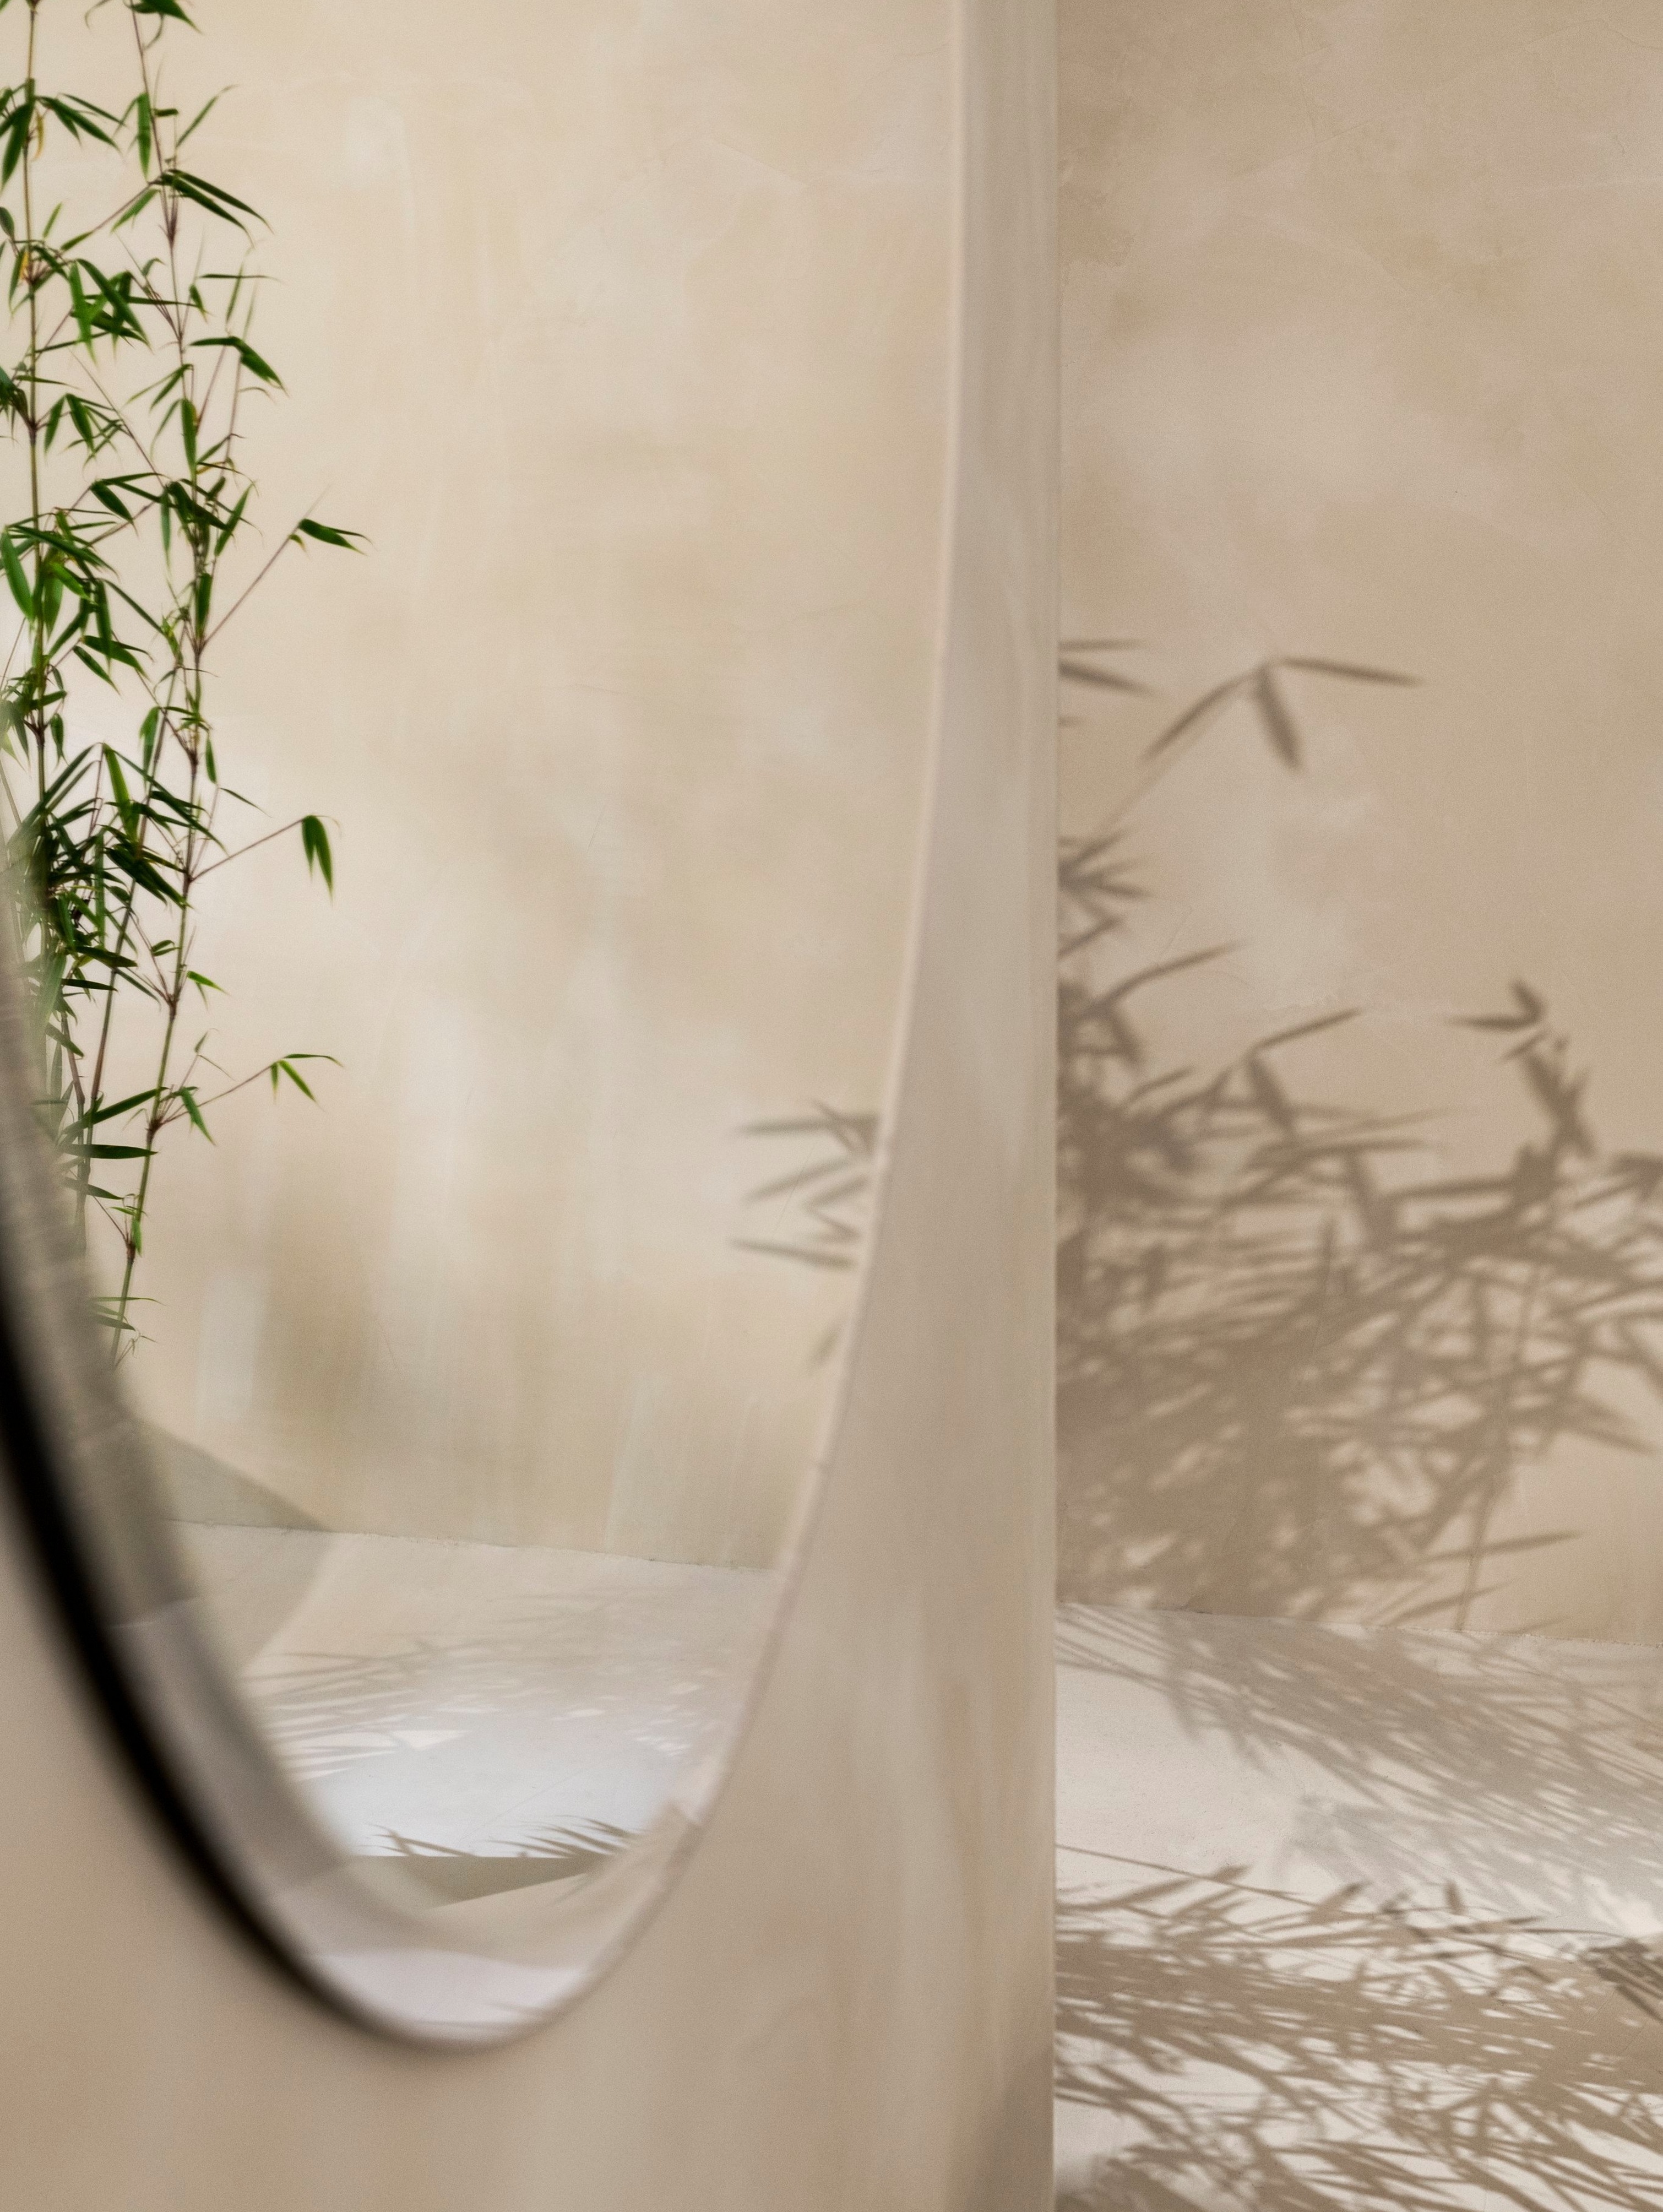 Круглое зеркало Tone на стене, отражающее растение.